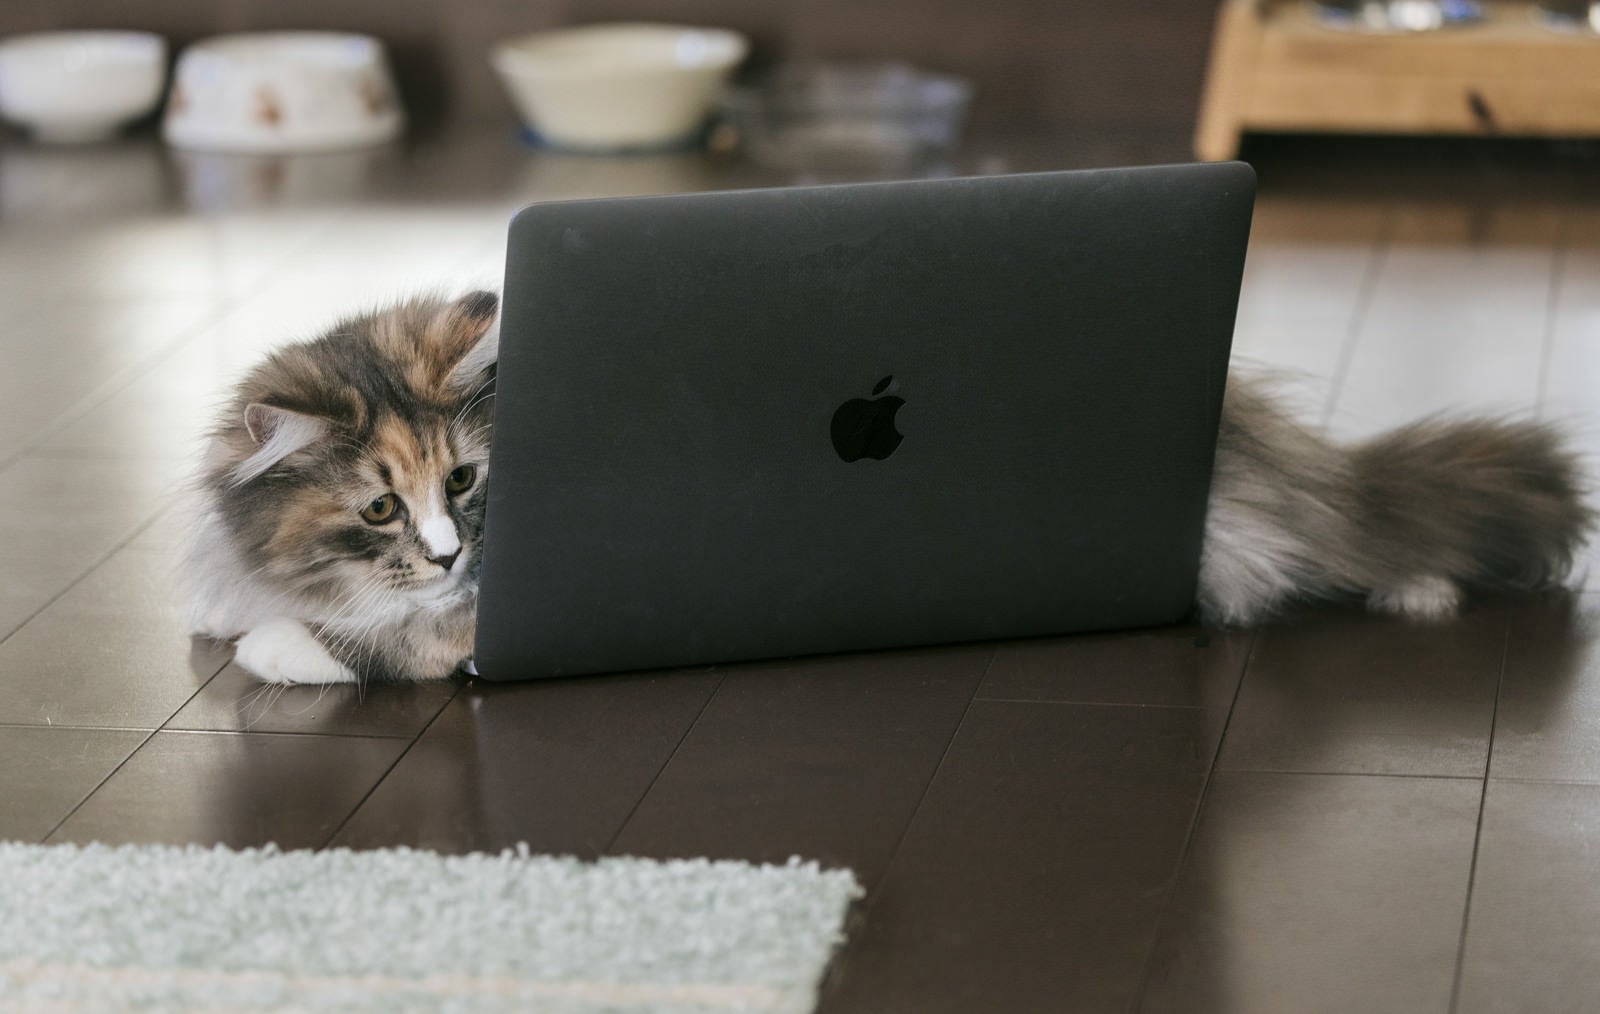 「MacBookの上に横たわる猫」の写真